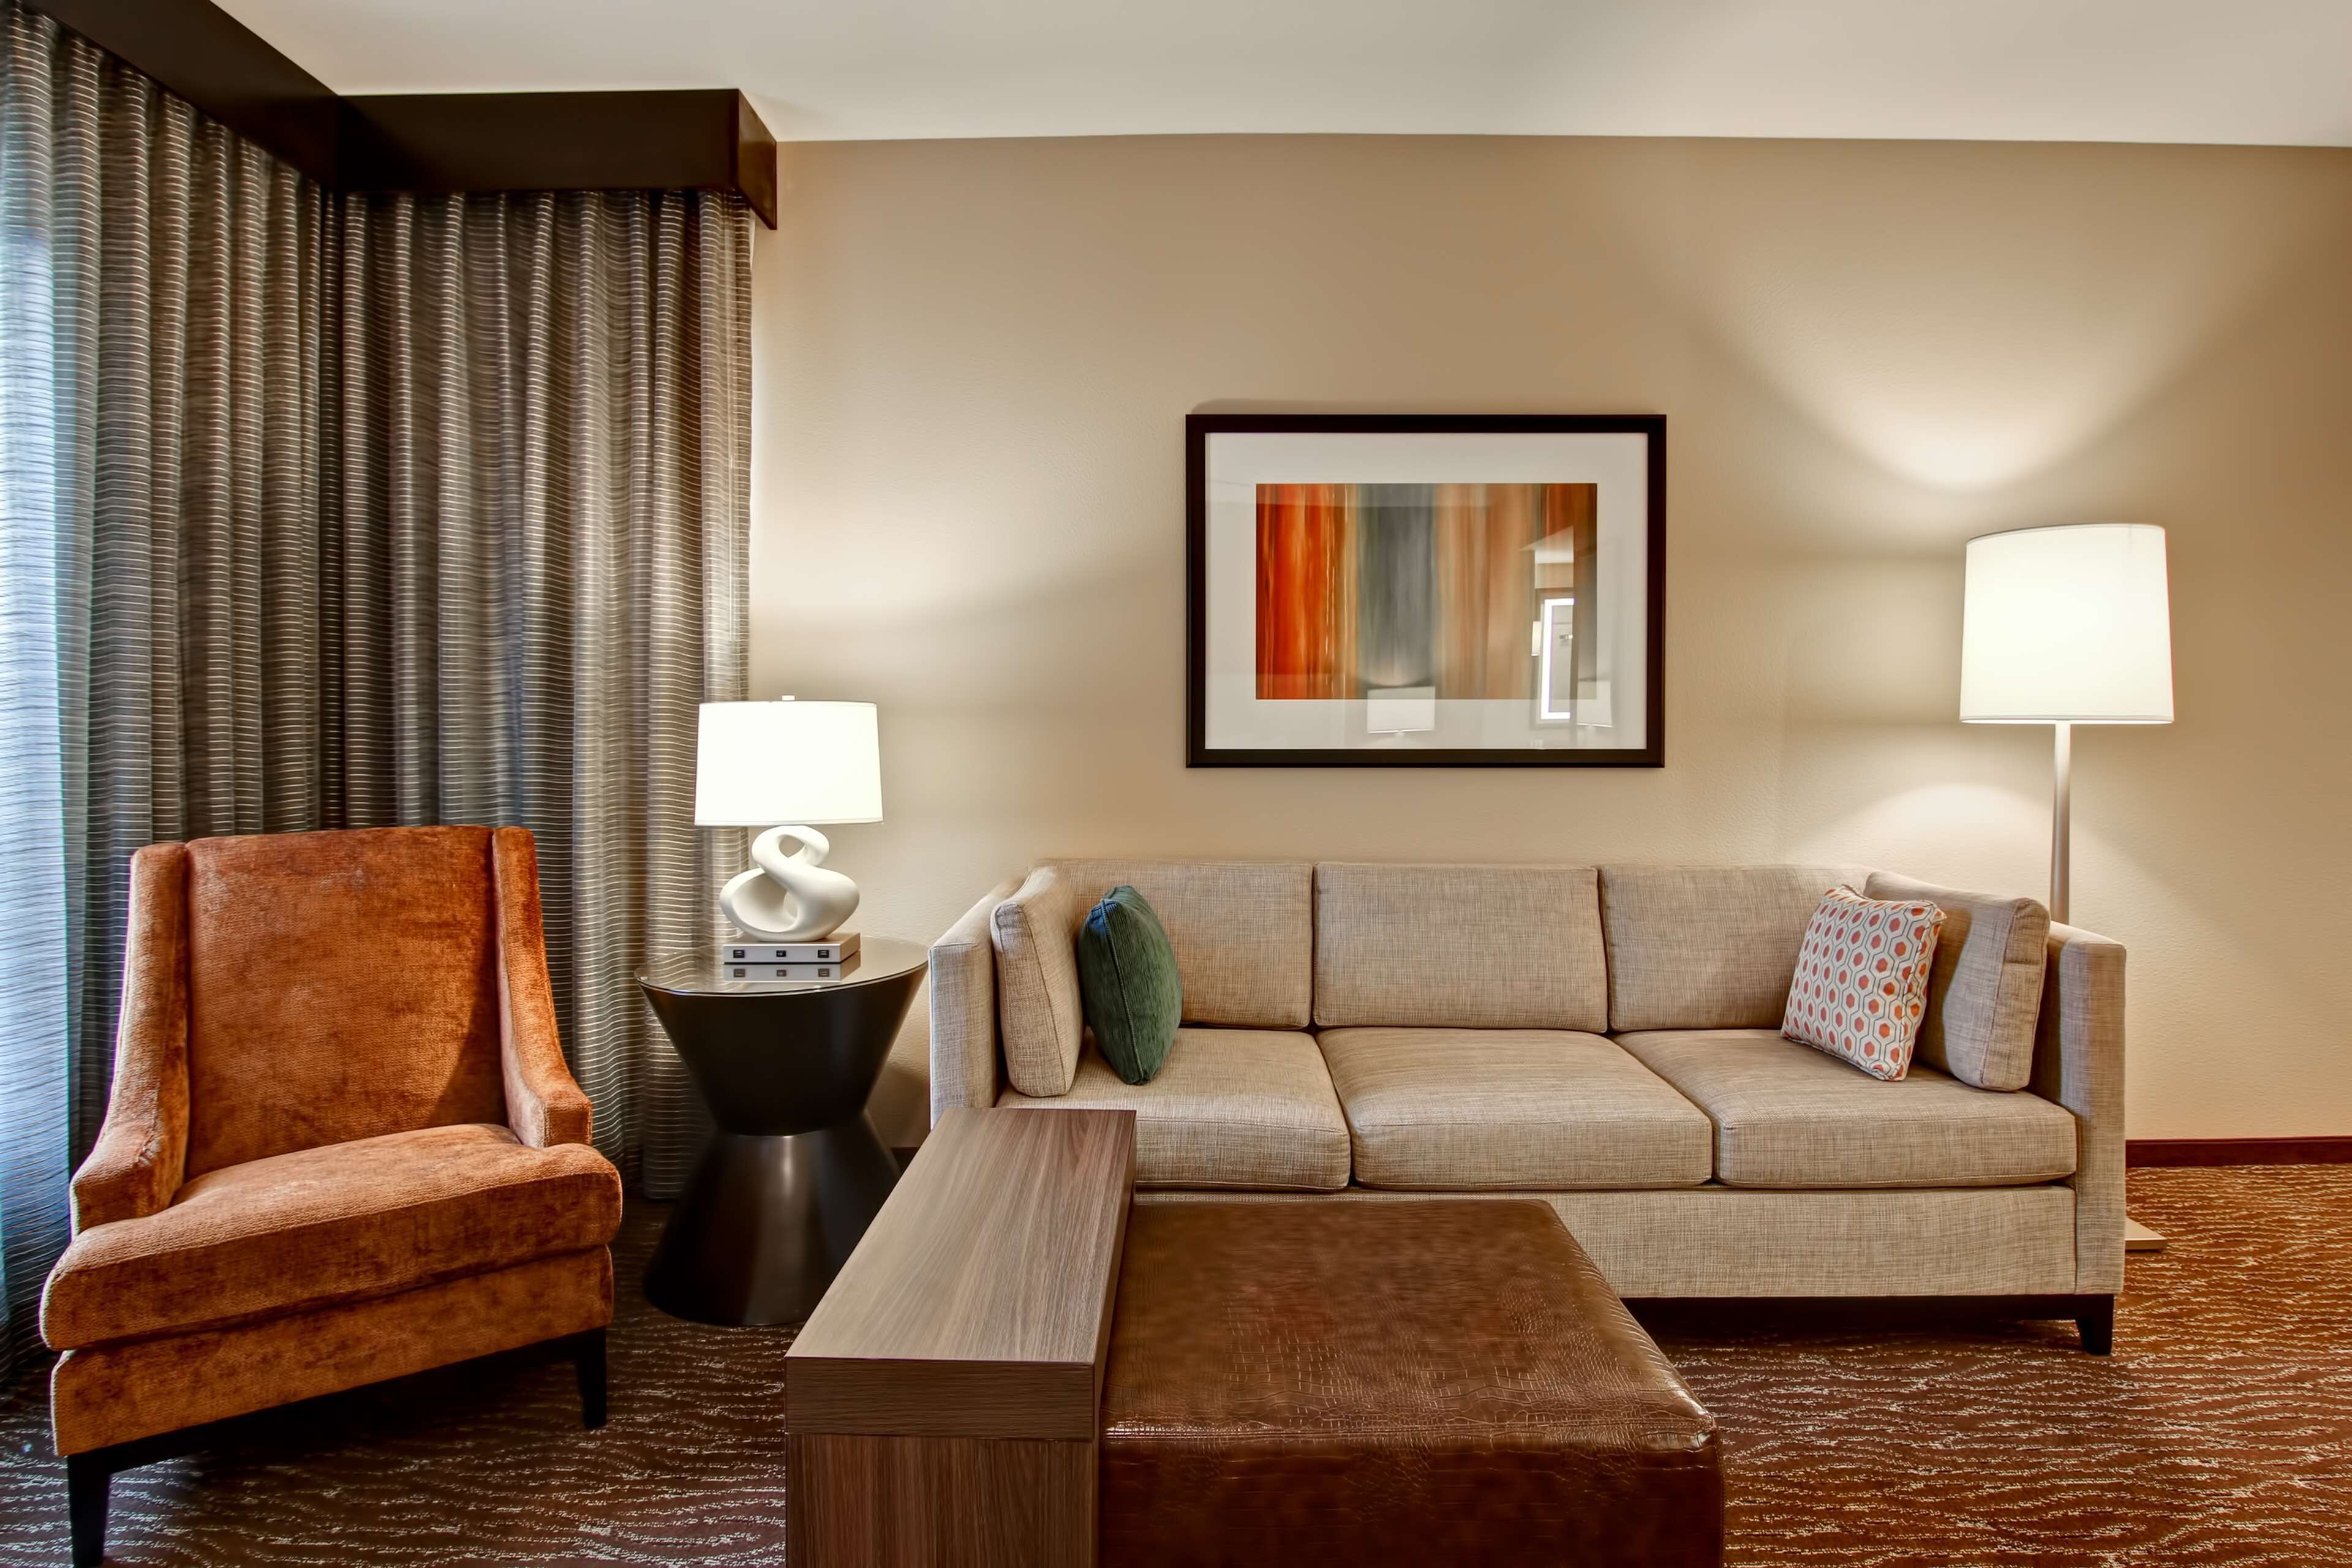 Homewood Suites by Hilton Palo Alto